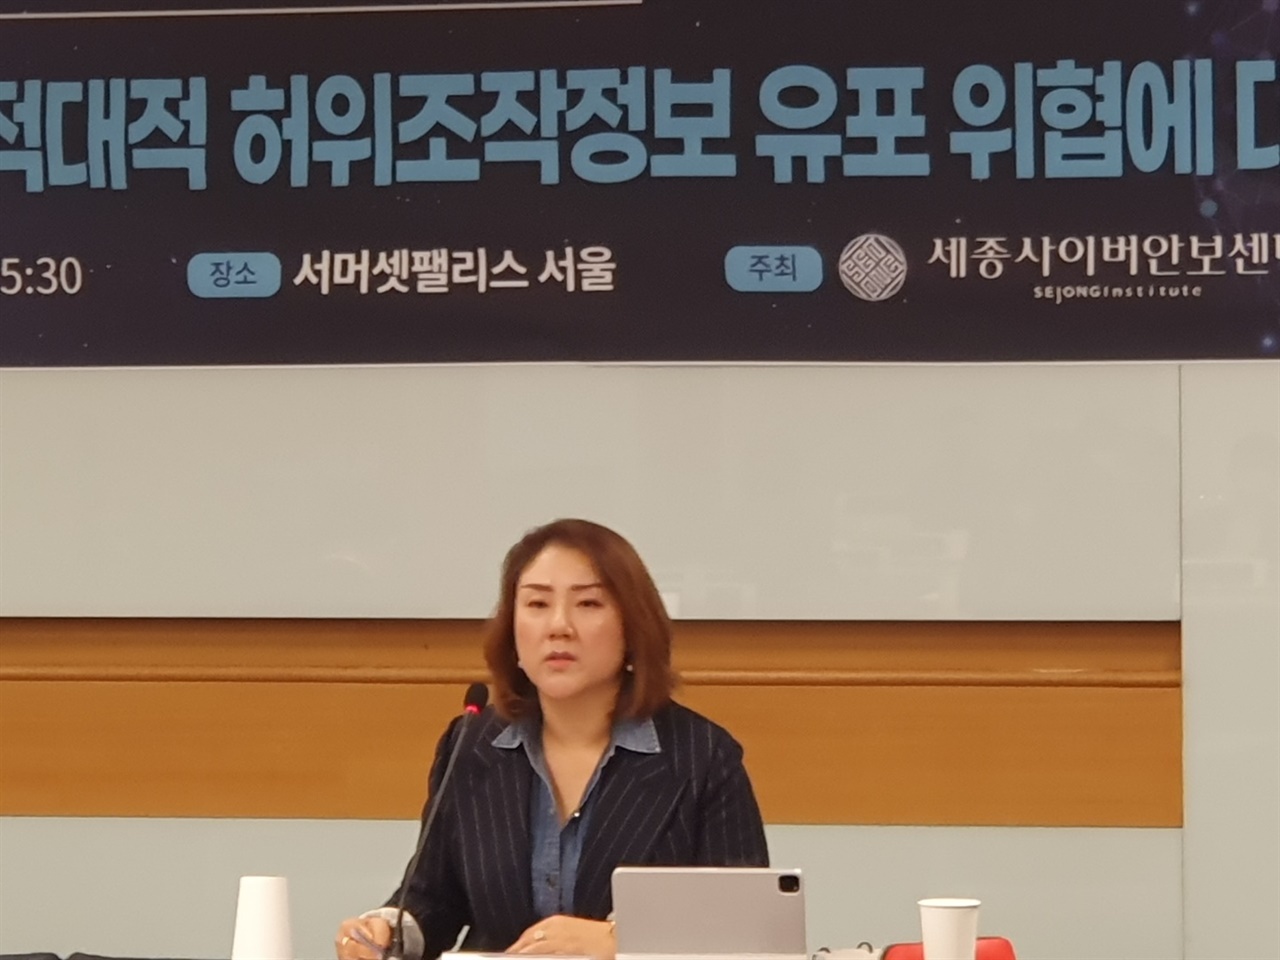 세종연구소가 서울 서머셋팰리스 호텔에서 개최한 세종사이버안보포럼에서 신소현 박사가 주제발표를 하고 있다.